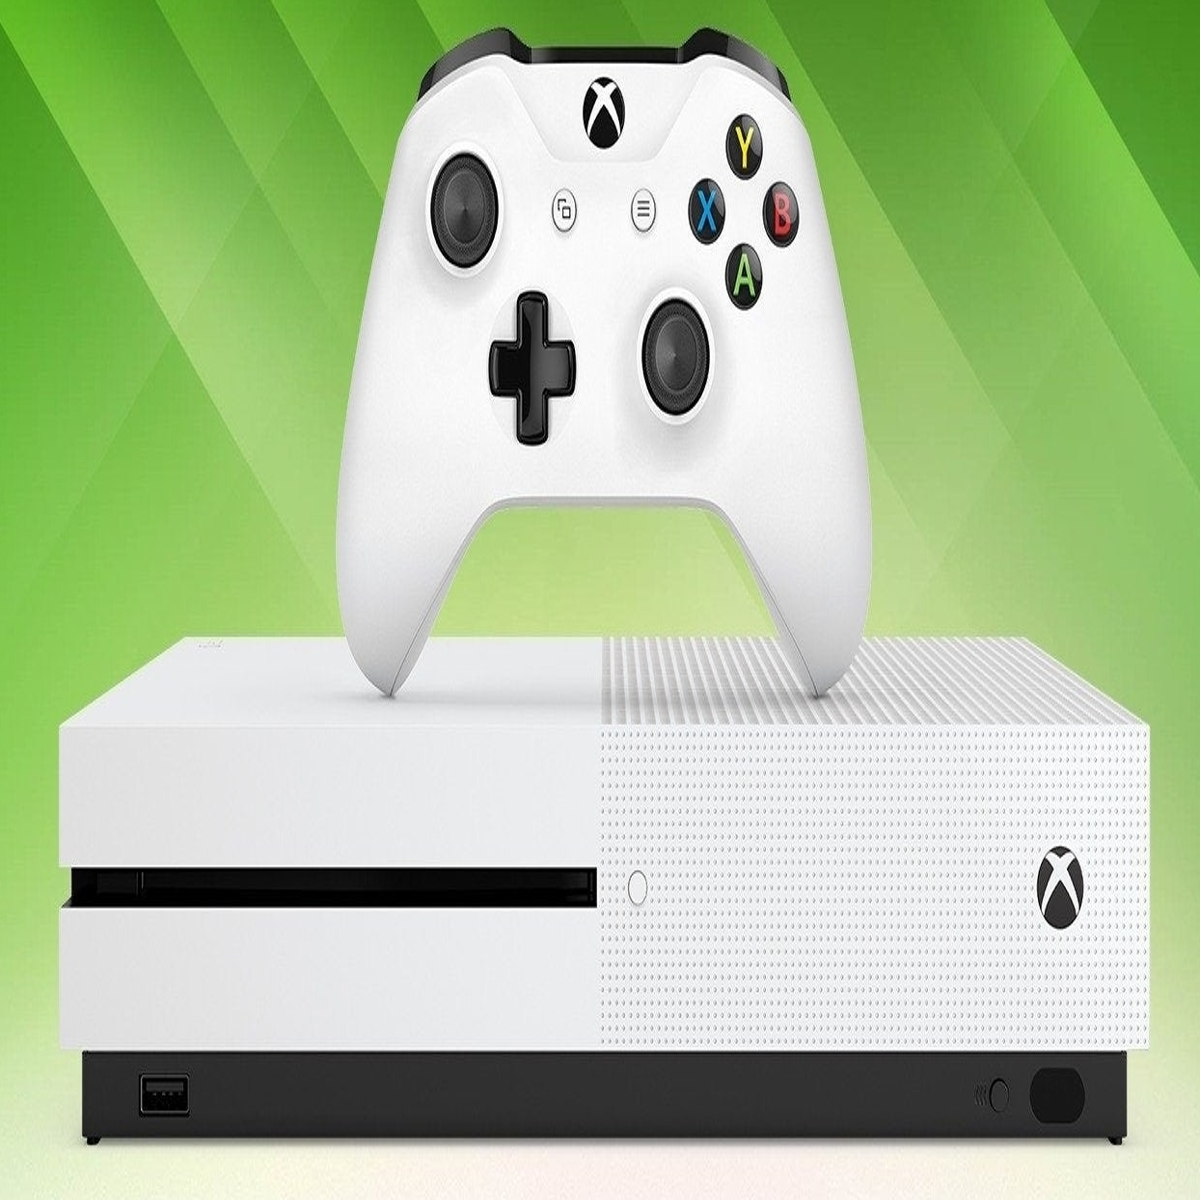 3 Formas de Escolher uma Boa Gamertag para Xbox - wikiHow